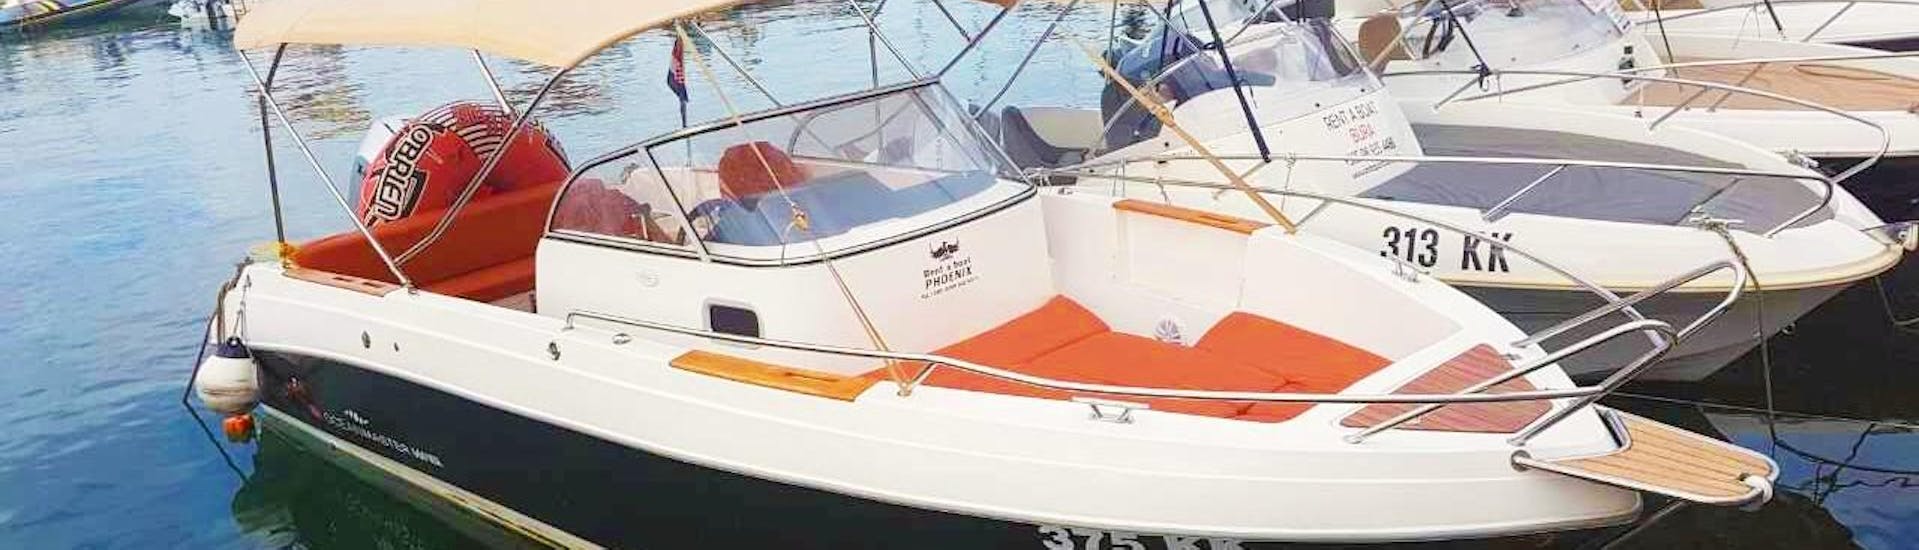 Barco disponible para un alquiler de motor para 8 personas en Krk con nuestro socio Rent a Boat Phoenix.